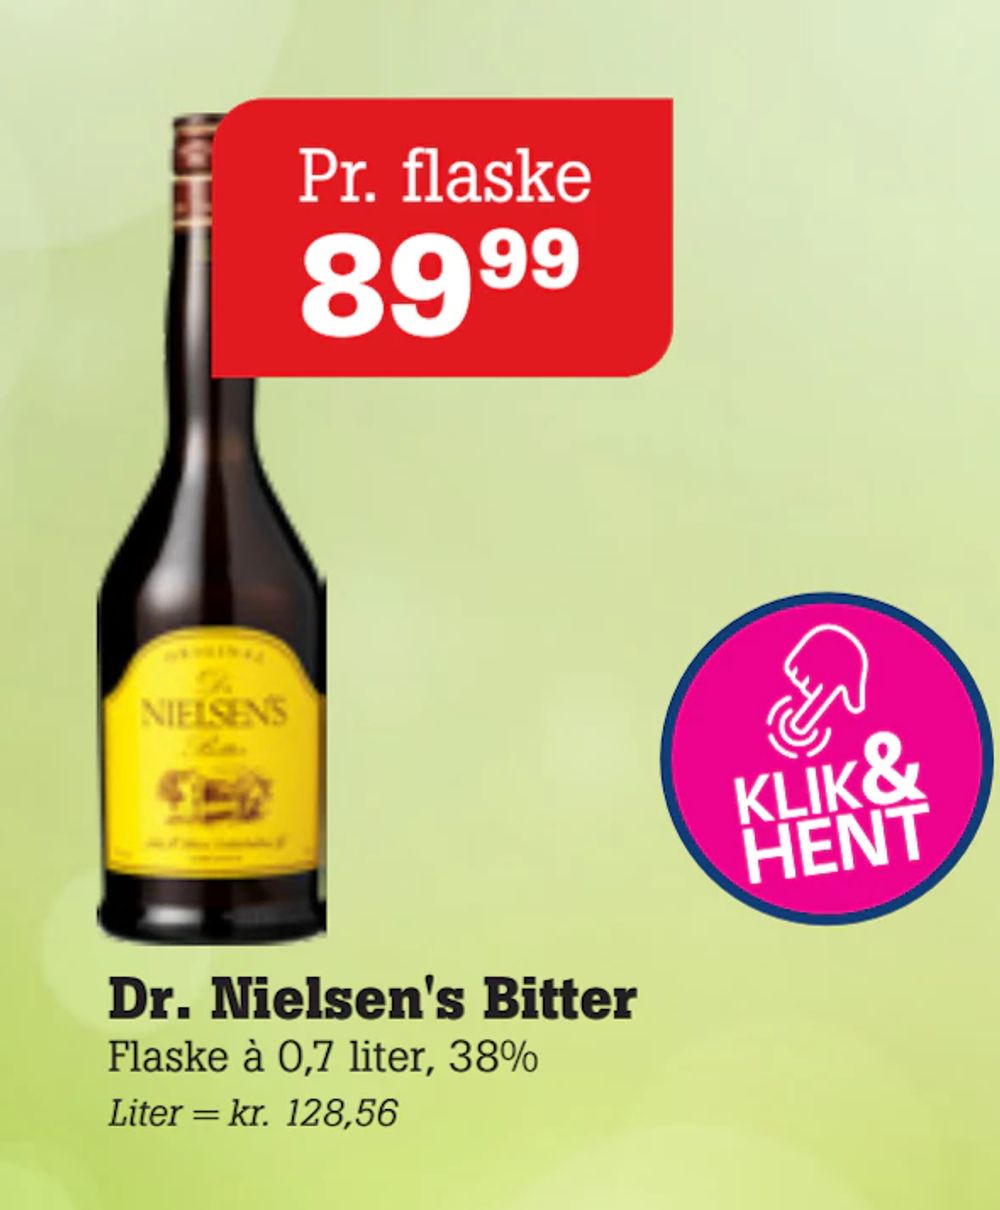 Tilbud på Dr. Nielsen's Bitter fra Poetzsch Padborg til 89,99 kr.